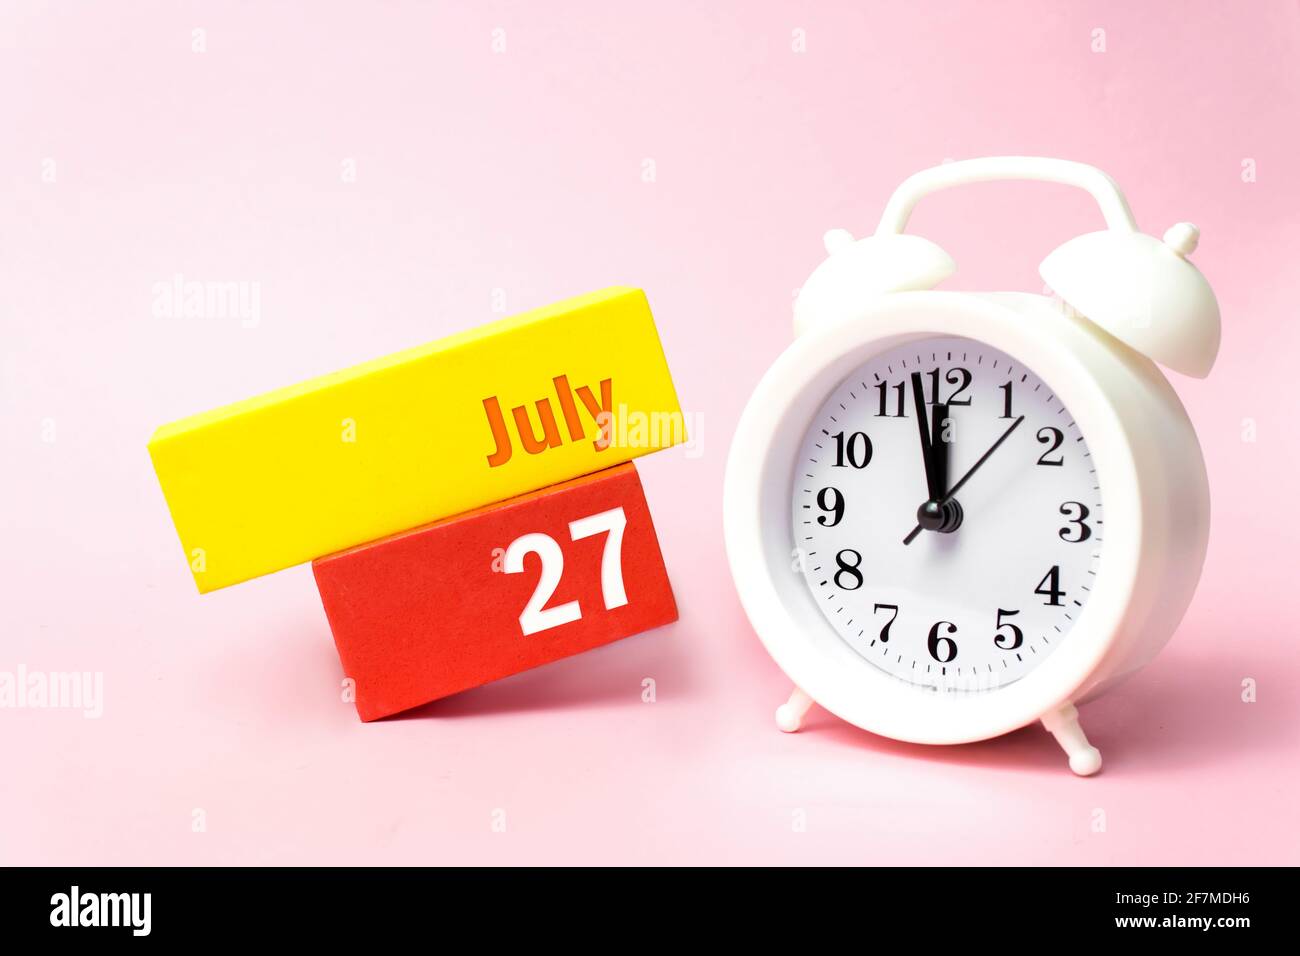 Juli. Tag 27 des Monats, Kalenderdatum. Weißer Wecker auf pastellrosa Hintergrund. Sommermonat, Tag des Jahres Konzept Stockfoto